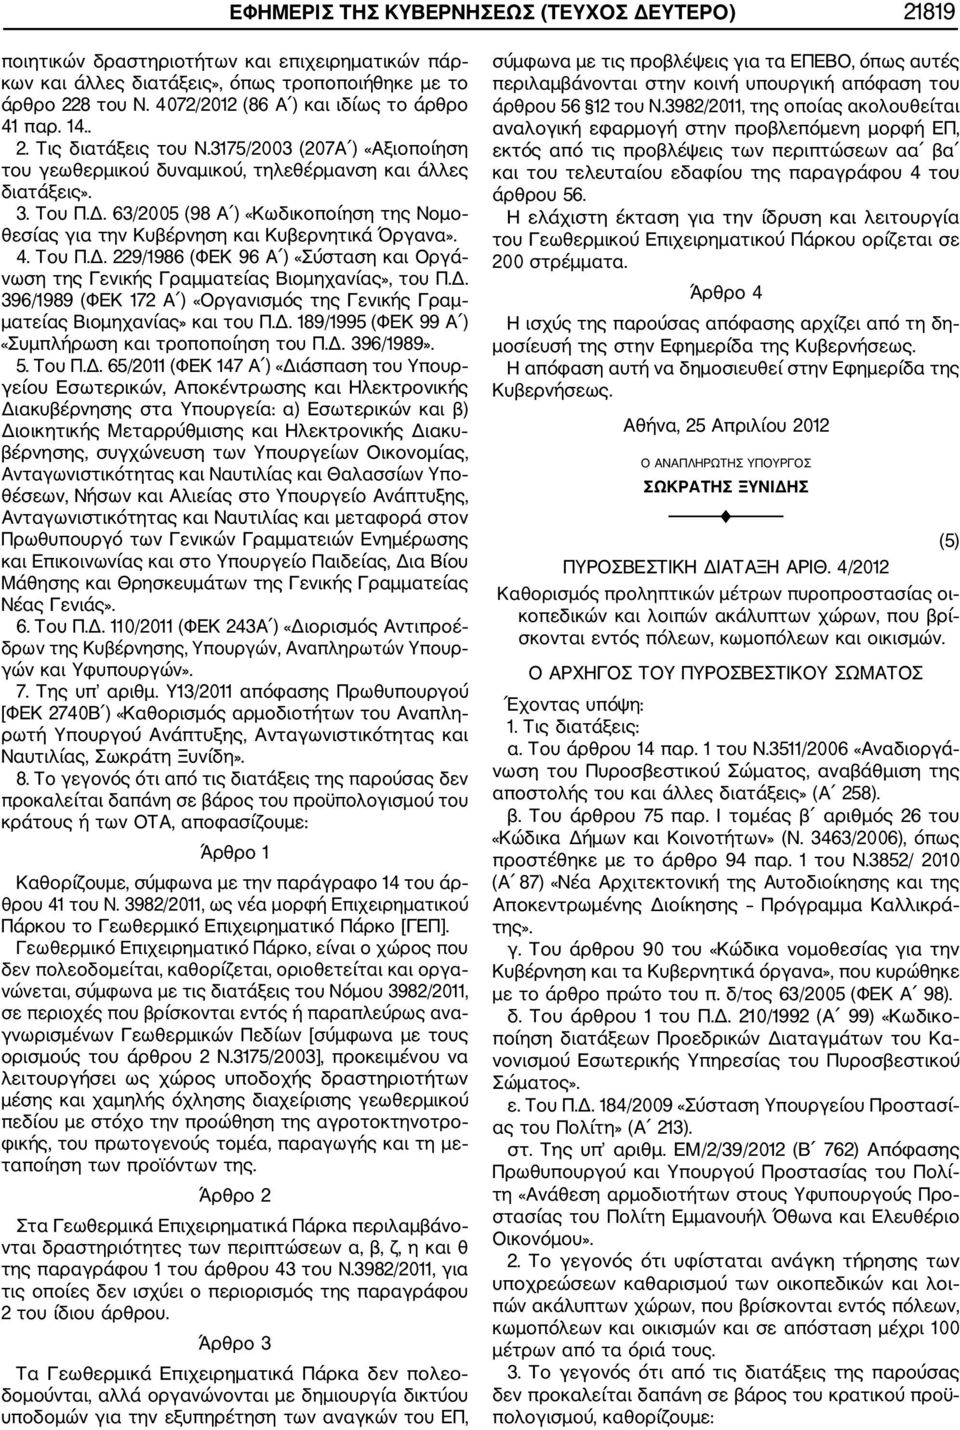 63/2005 (98 Α ) «Κωδικοποίηση της Νομο θεσίας για την Κυβέρνηση και Κυβερνητικά Όργανα». 4. Του Π.Δ. 229/1986 (ΦΕΚ 96 Α ) «Σύσταση και Οργά νωση της Γενικής Γραμματείας Βιομηχανίας», του Π.Δ. 396/1989 (ΦΕΚ 172 Α ) «Οργανισμός της Γενικής Γραμ ματείας Βιομηχανίας» και του Π.